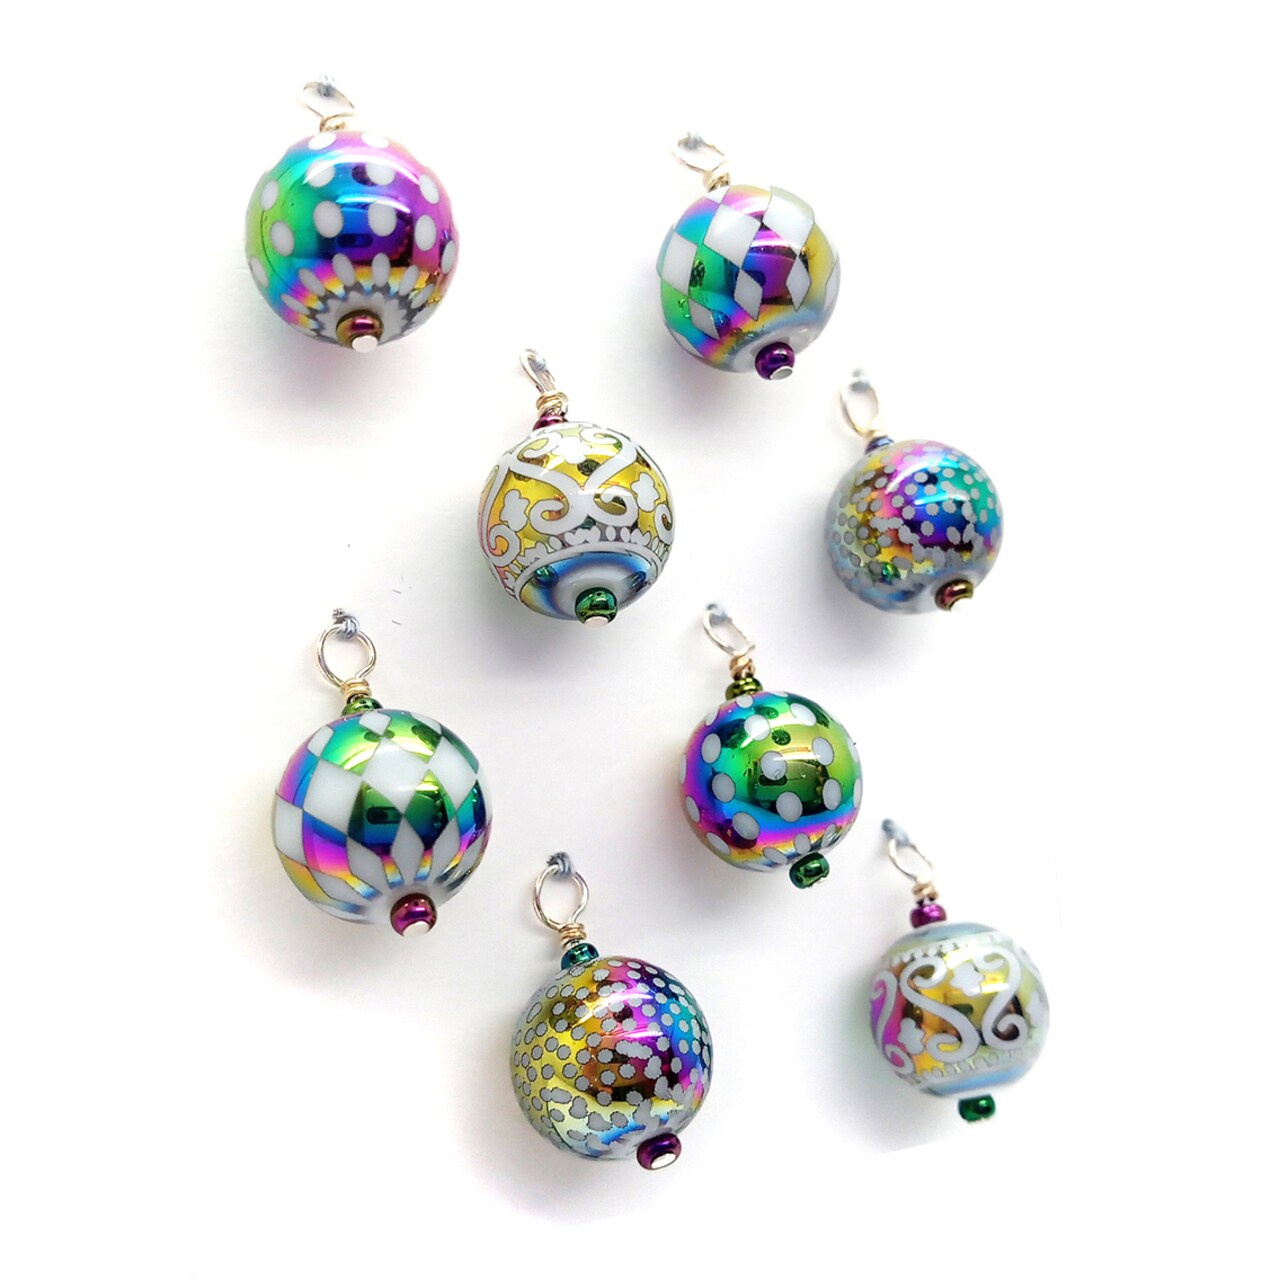 Miniature Ornaments